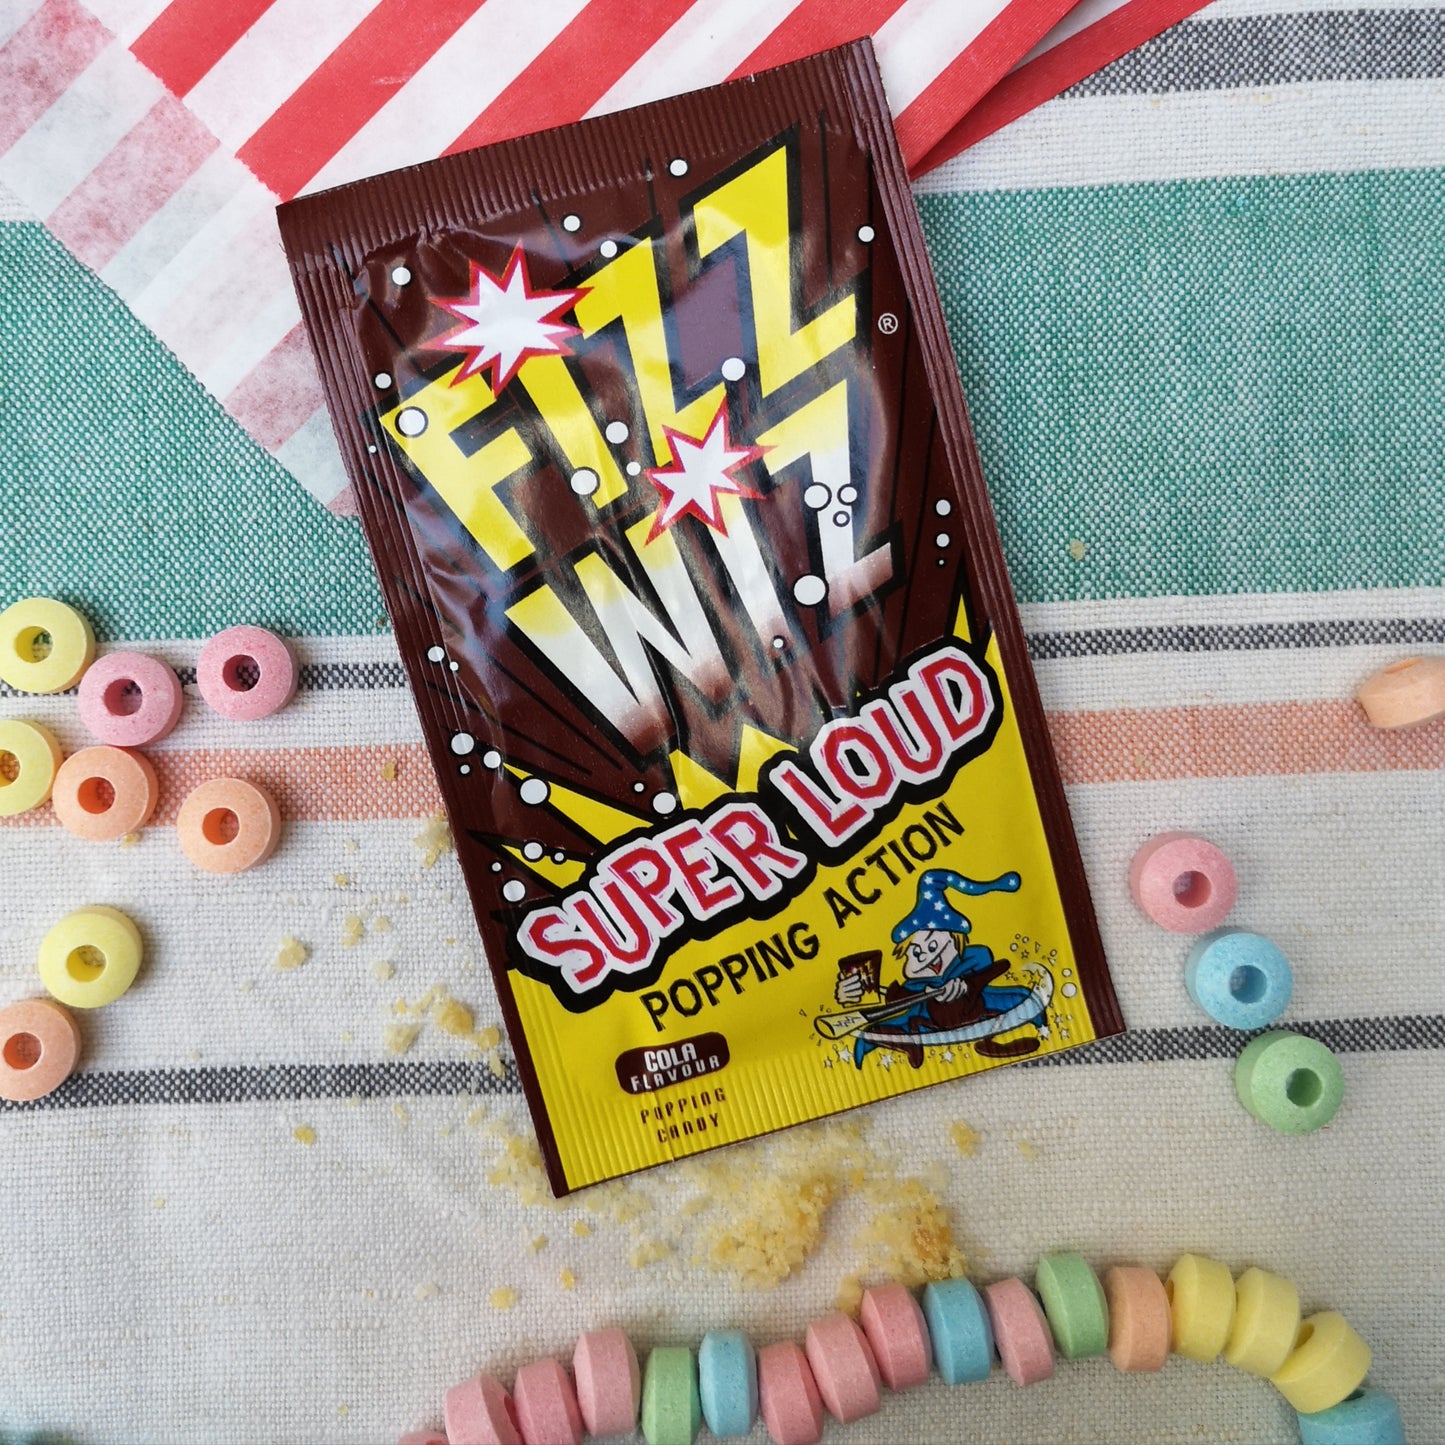 Fizz wiz popping candy